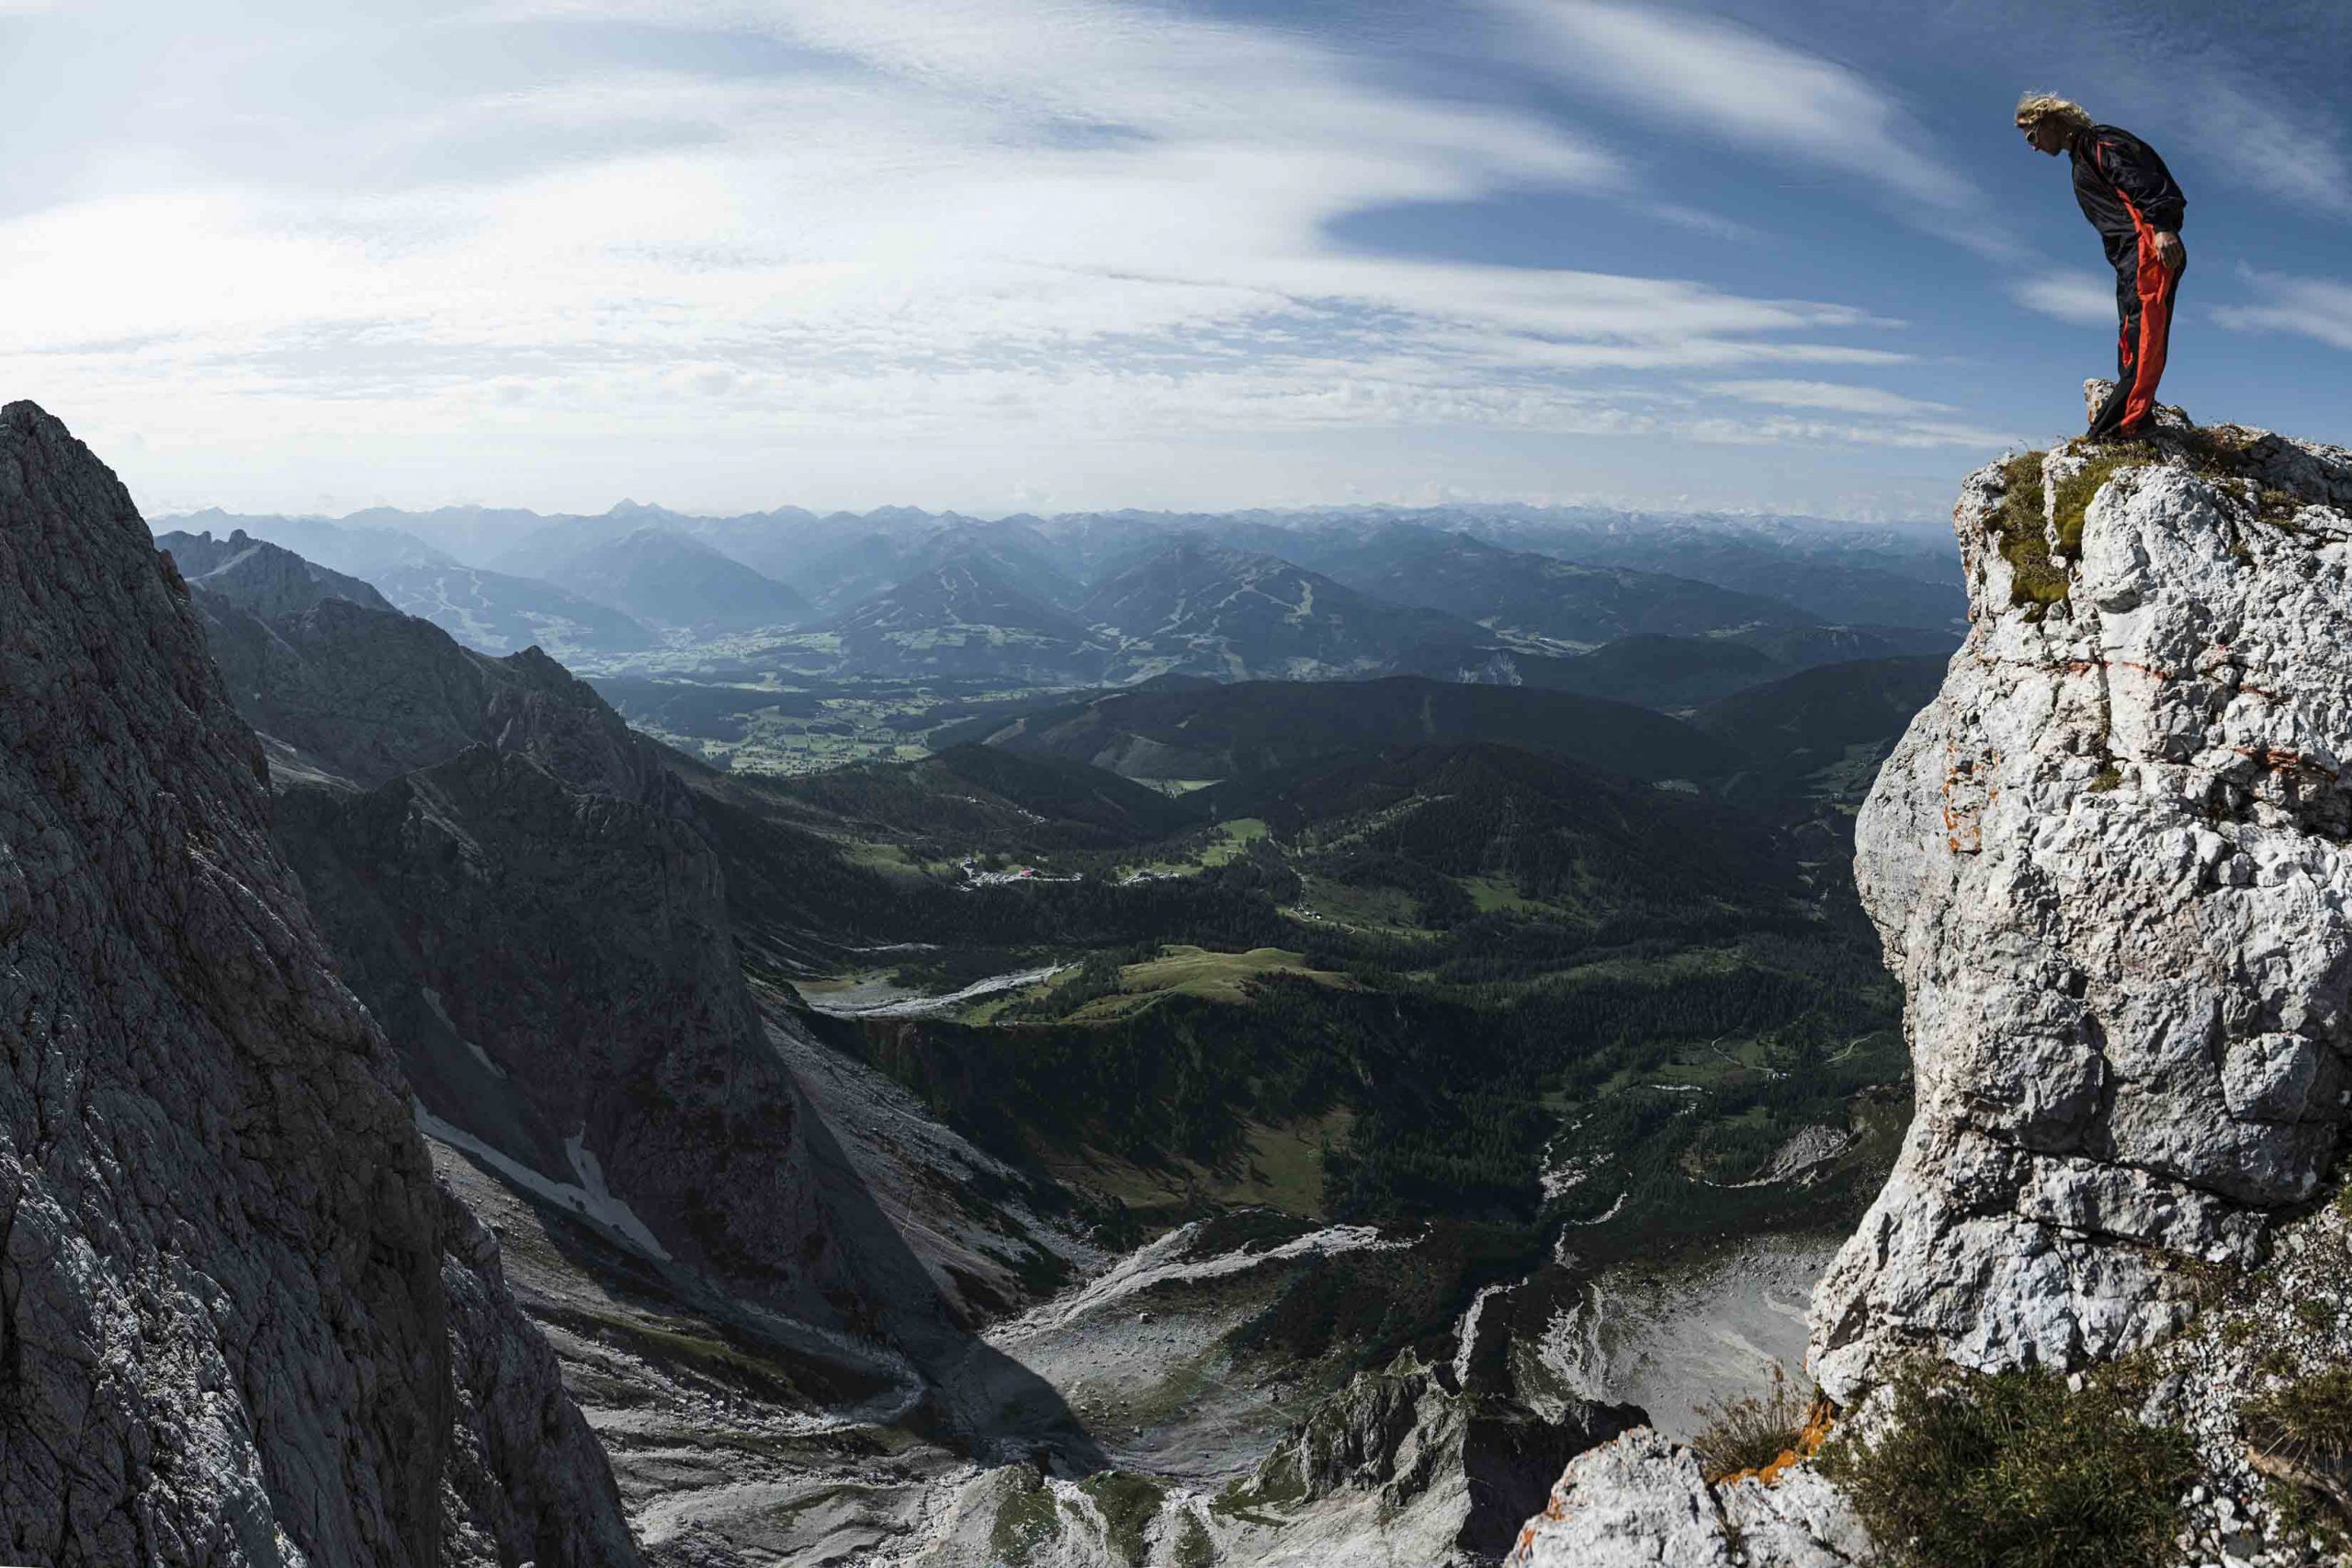 Mich (Michael) Kemeter (Extremsportler in den Disziplinen Klettern, Slacklining und Basejumping) am Weg zur Dachstein Südwand – Absprung Basejump.